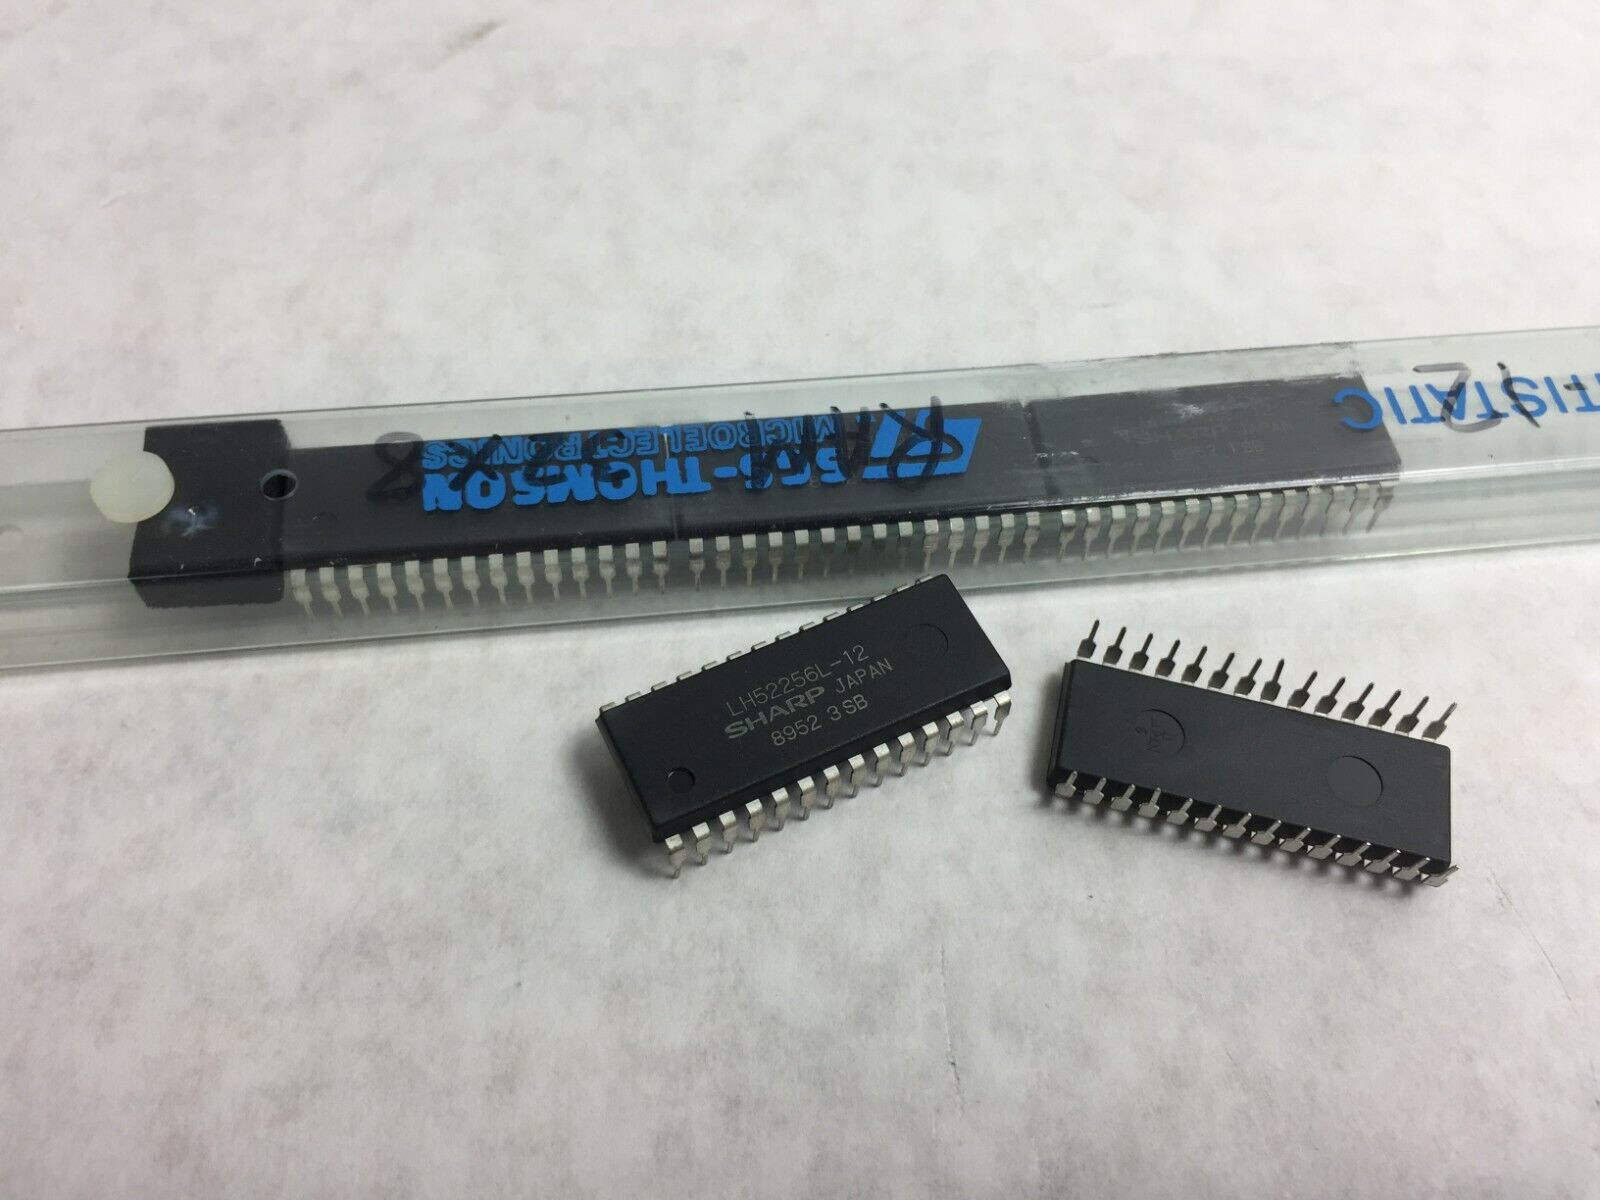 (5) Sharp LH52256L-12  Standard SRAM  32KX8  120ns  CMOS  PDIP28   Lot of 5